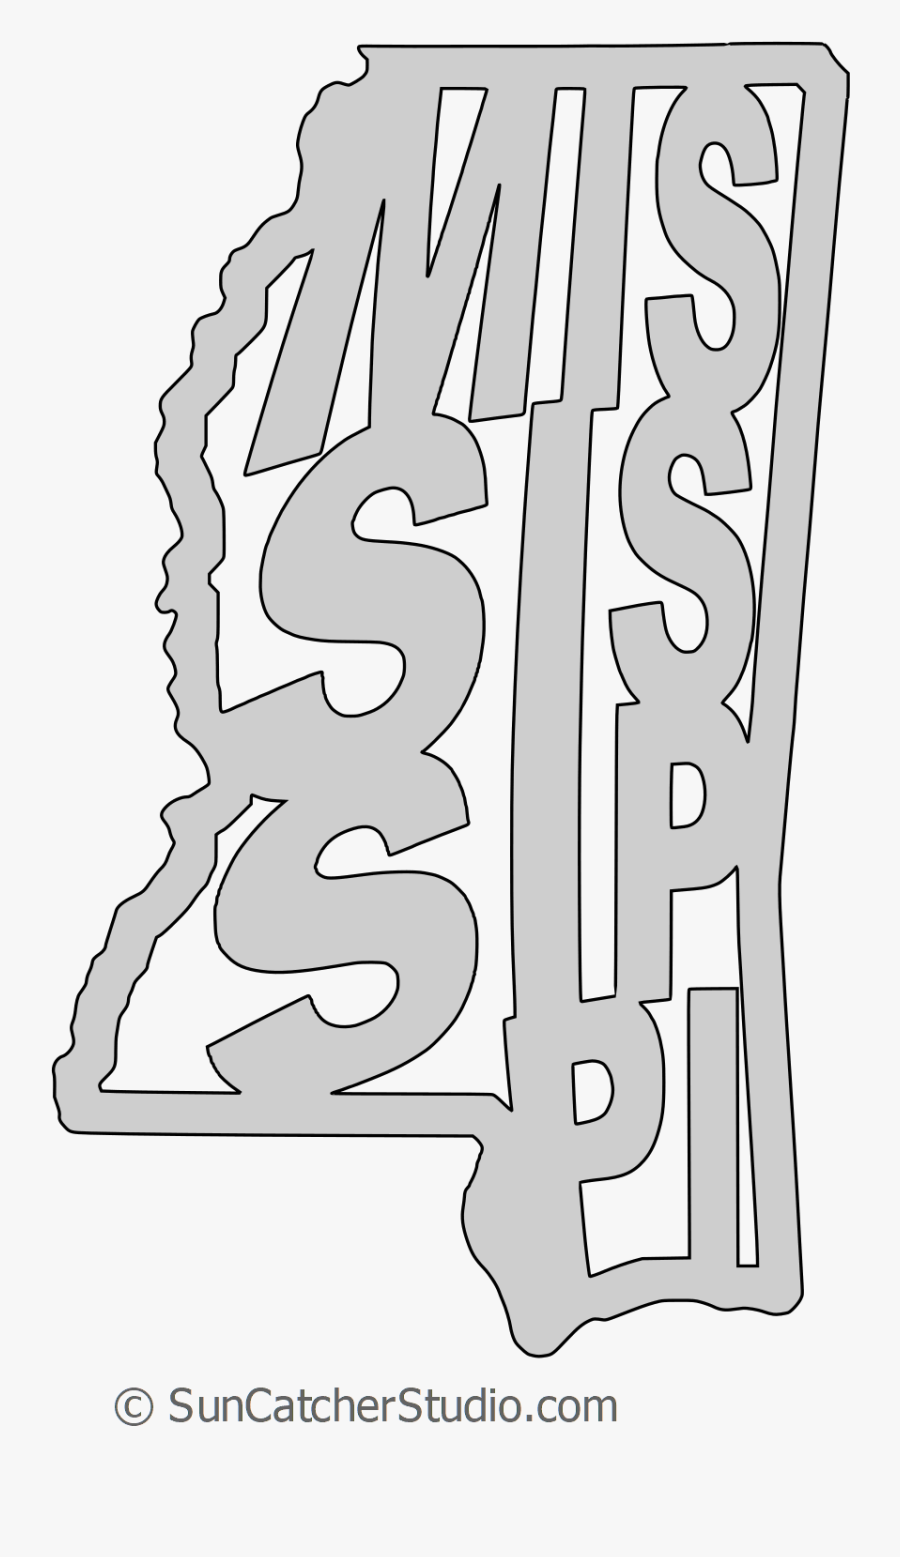 Mississippi Outline Png, Transparent Clipart